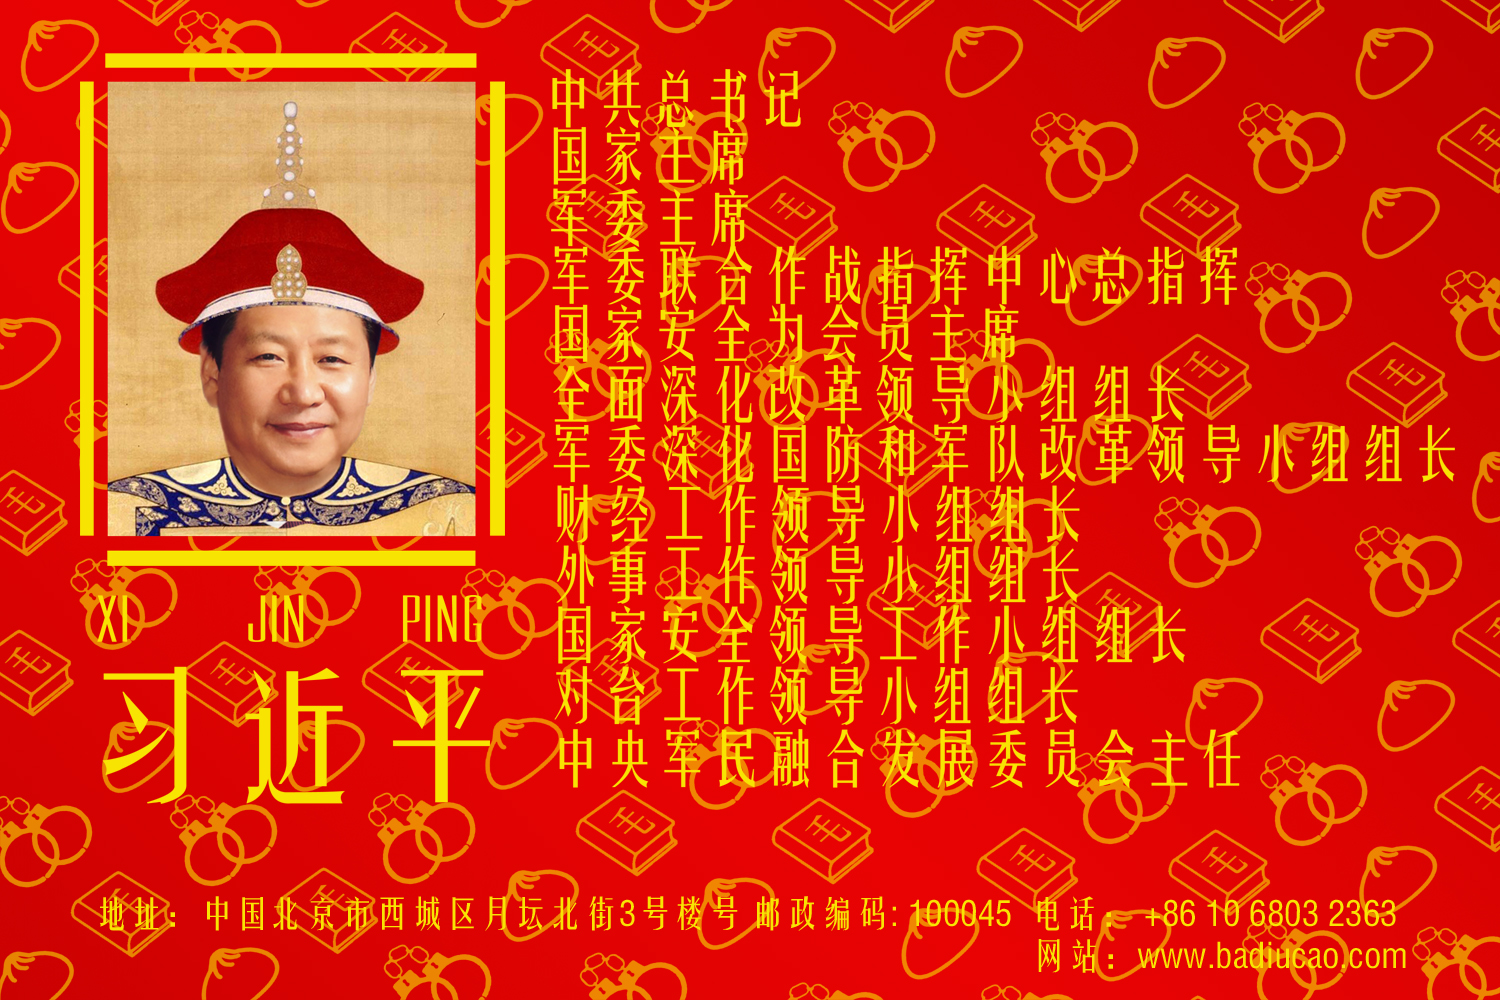 Badiucao: Xi Jinping’s New Business Card